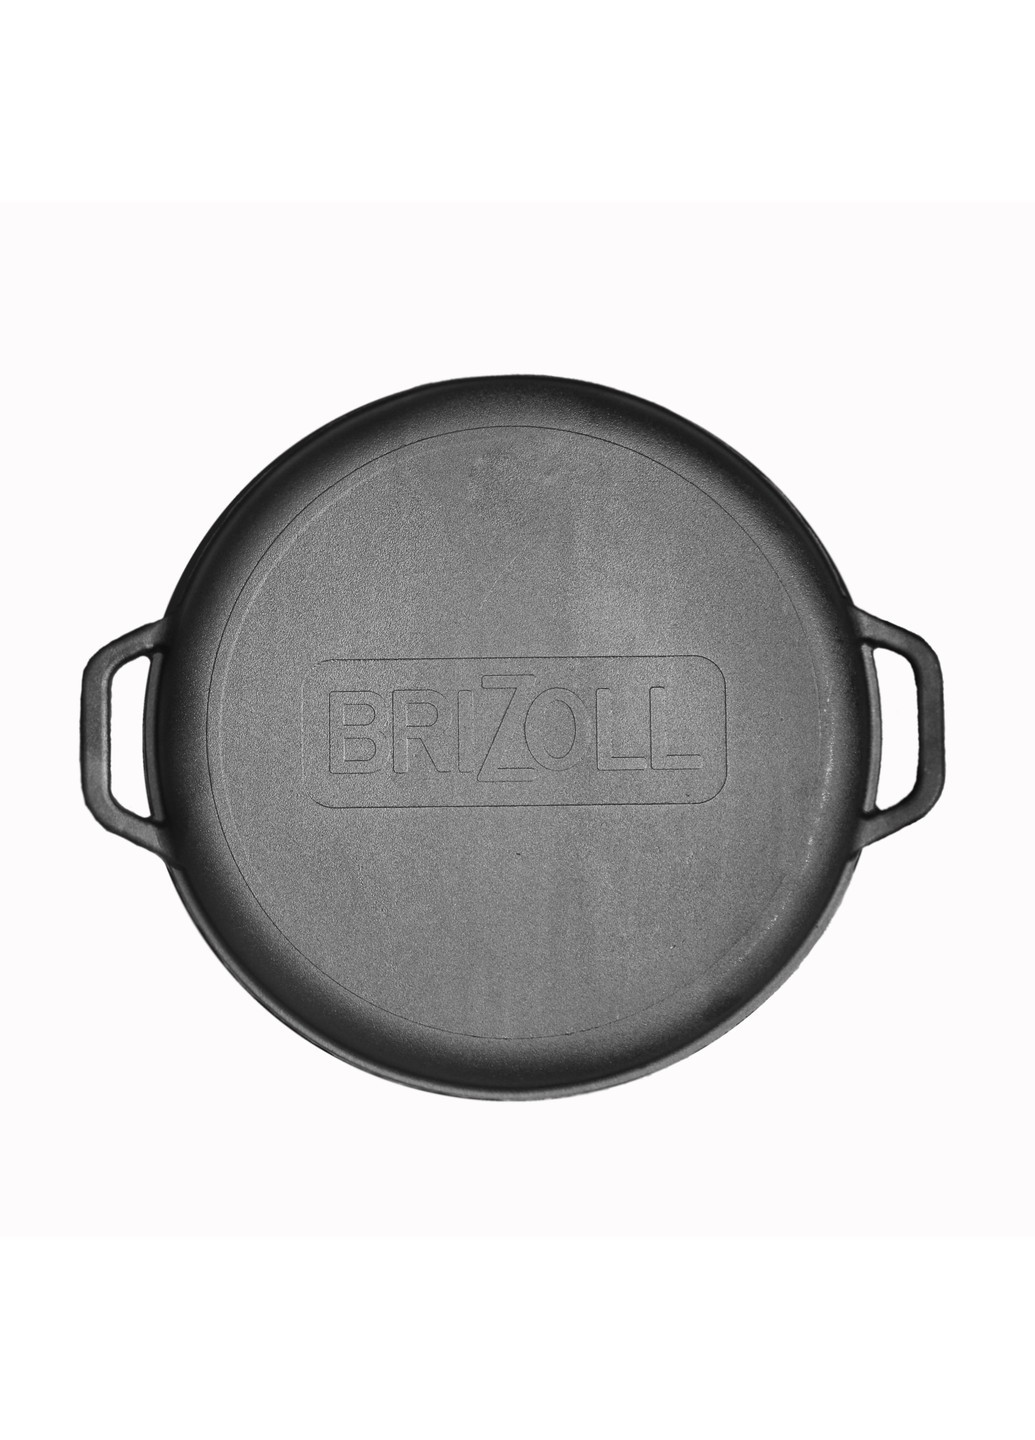 Чугунная сковорода WOK с крышкой-сковородой гриль 8 л Brizoll (276390229)